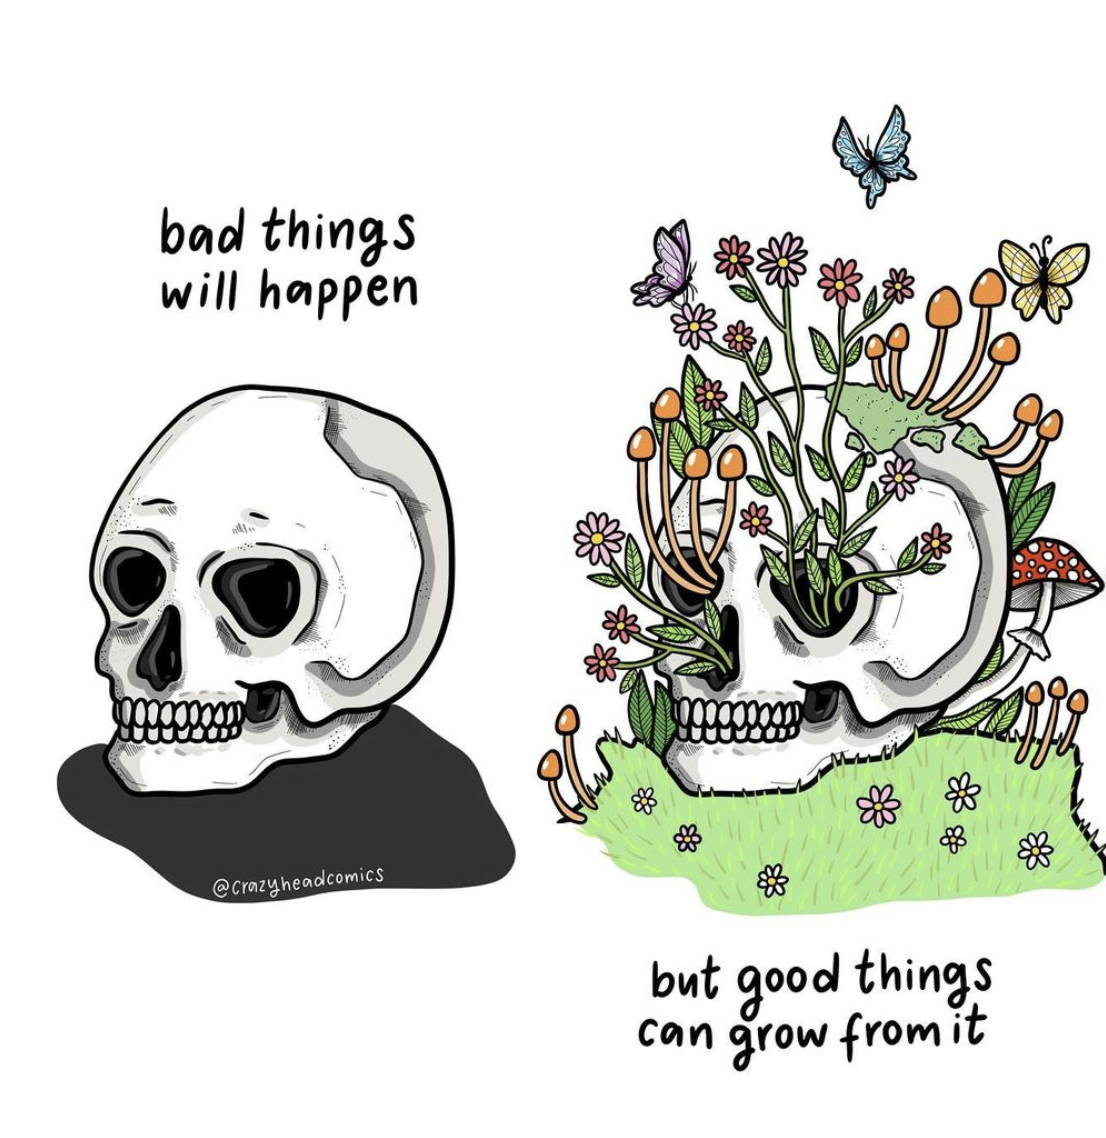 Bad things!